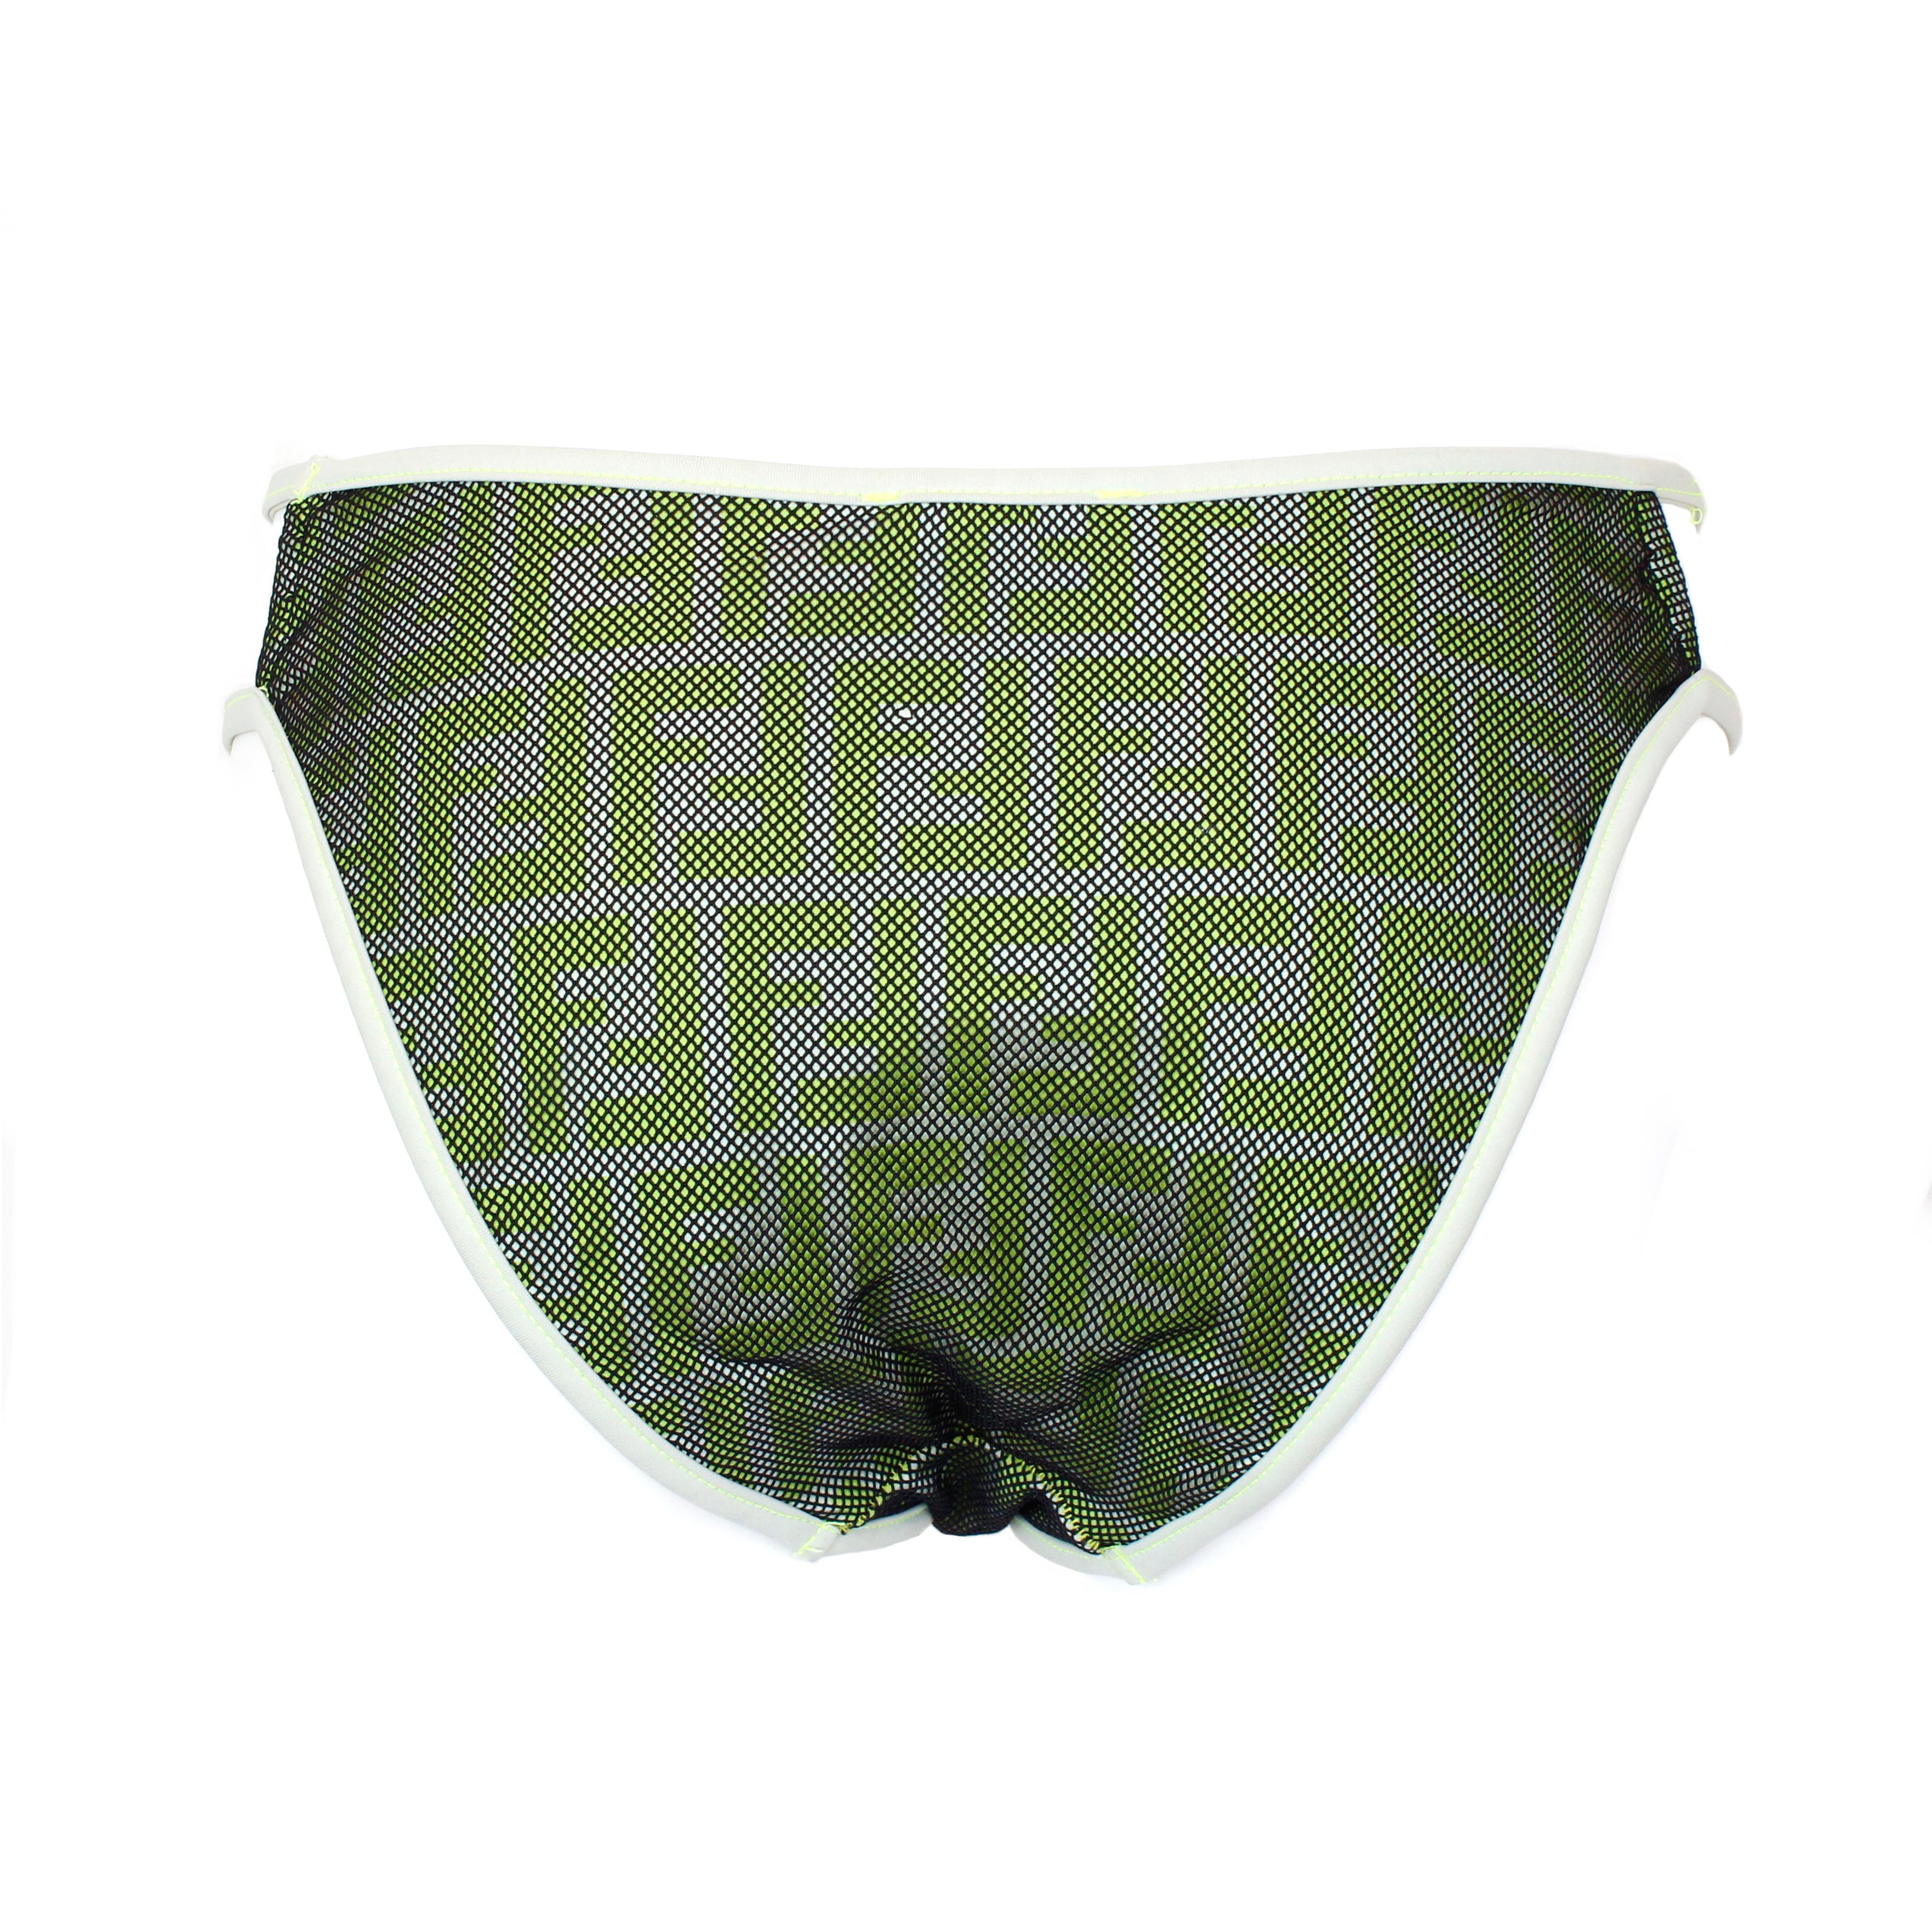 Bas de bikini une pièce Fendi, imprimé zucca vert, avec maille noire. Taille 44 IT.
